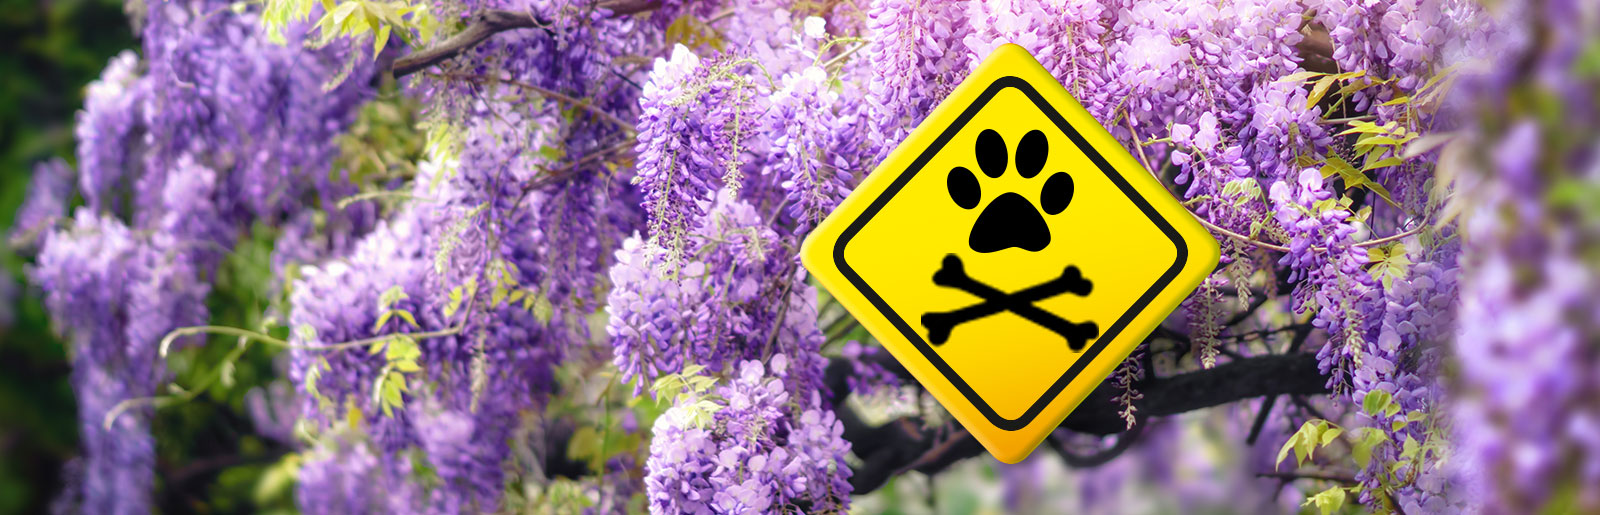 Giftige Pflanzen für Hunde und Katzen